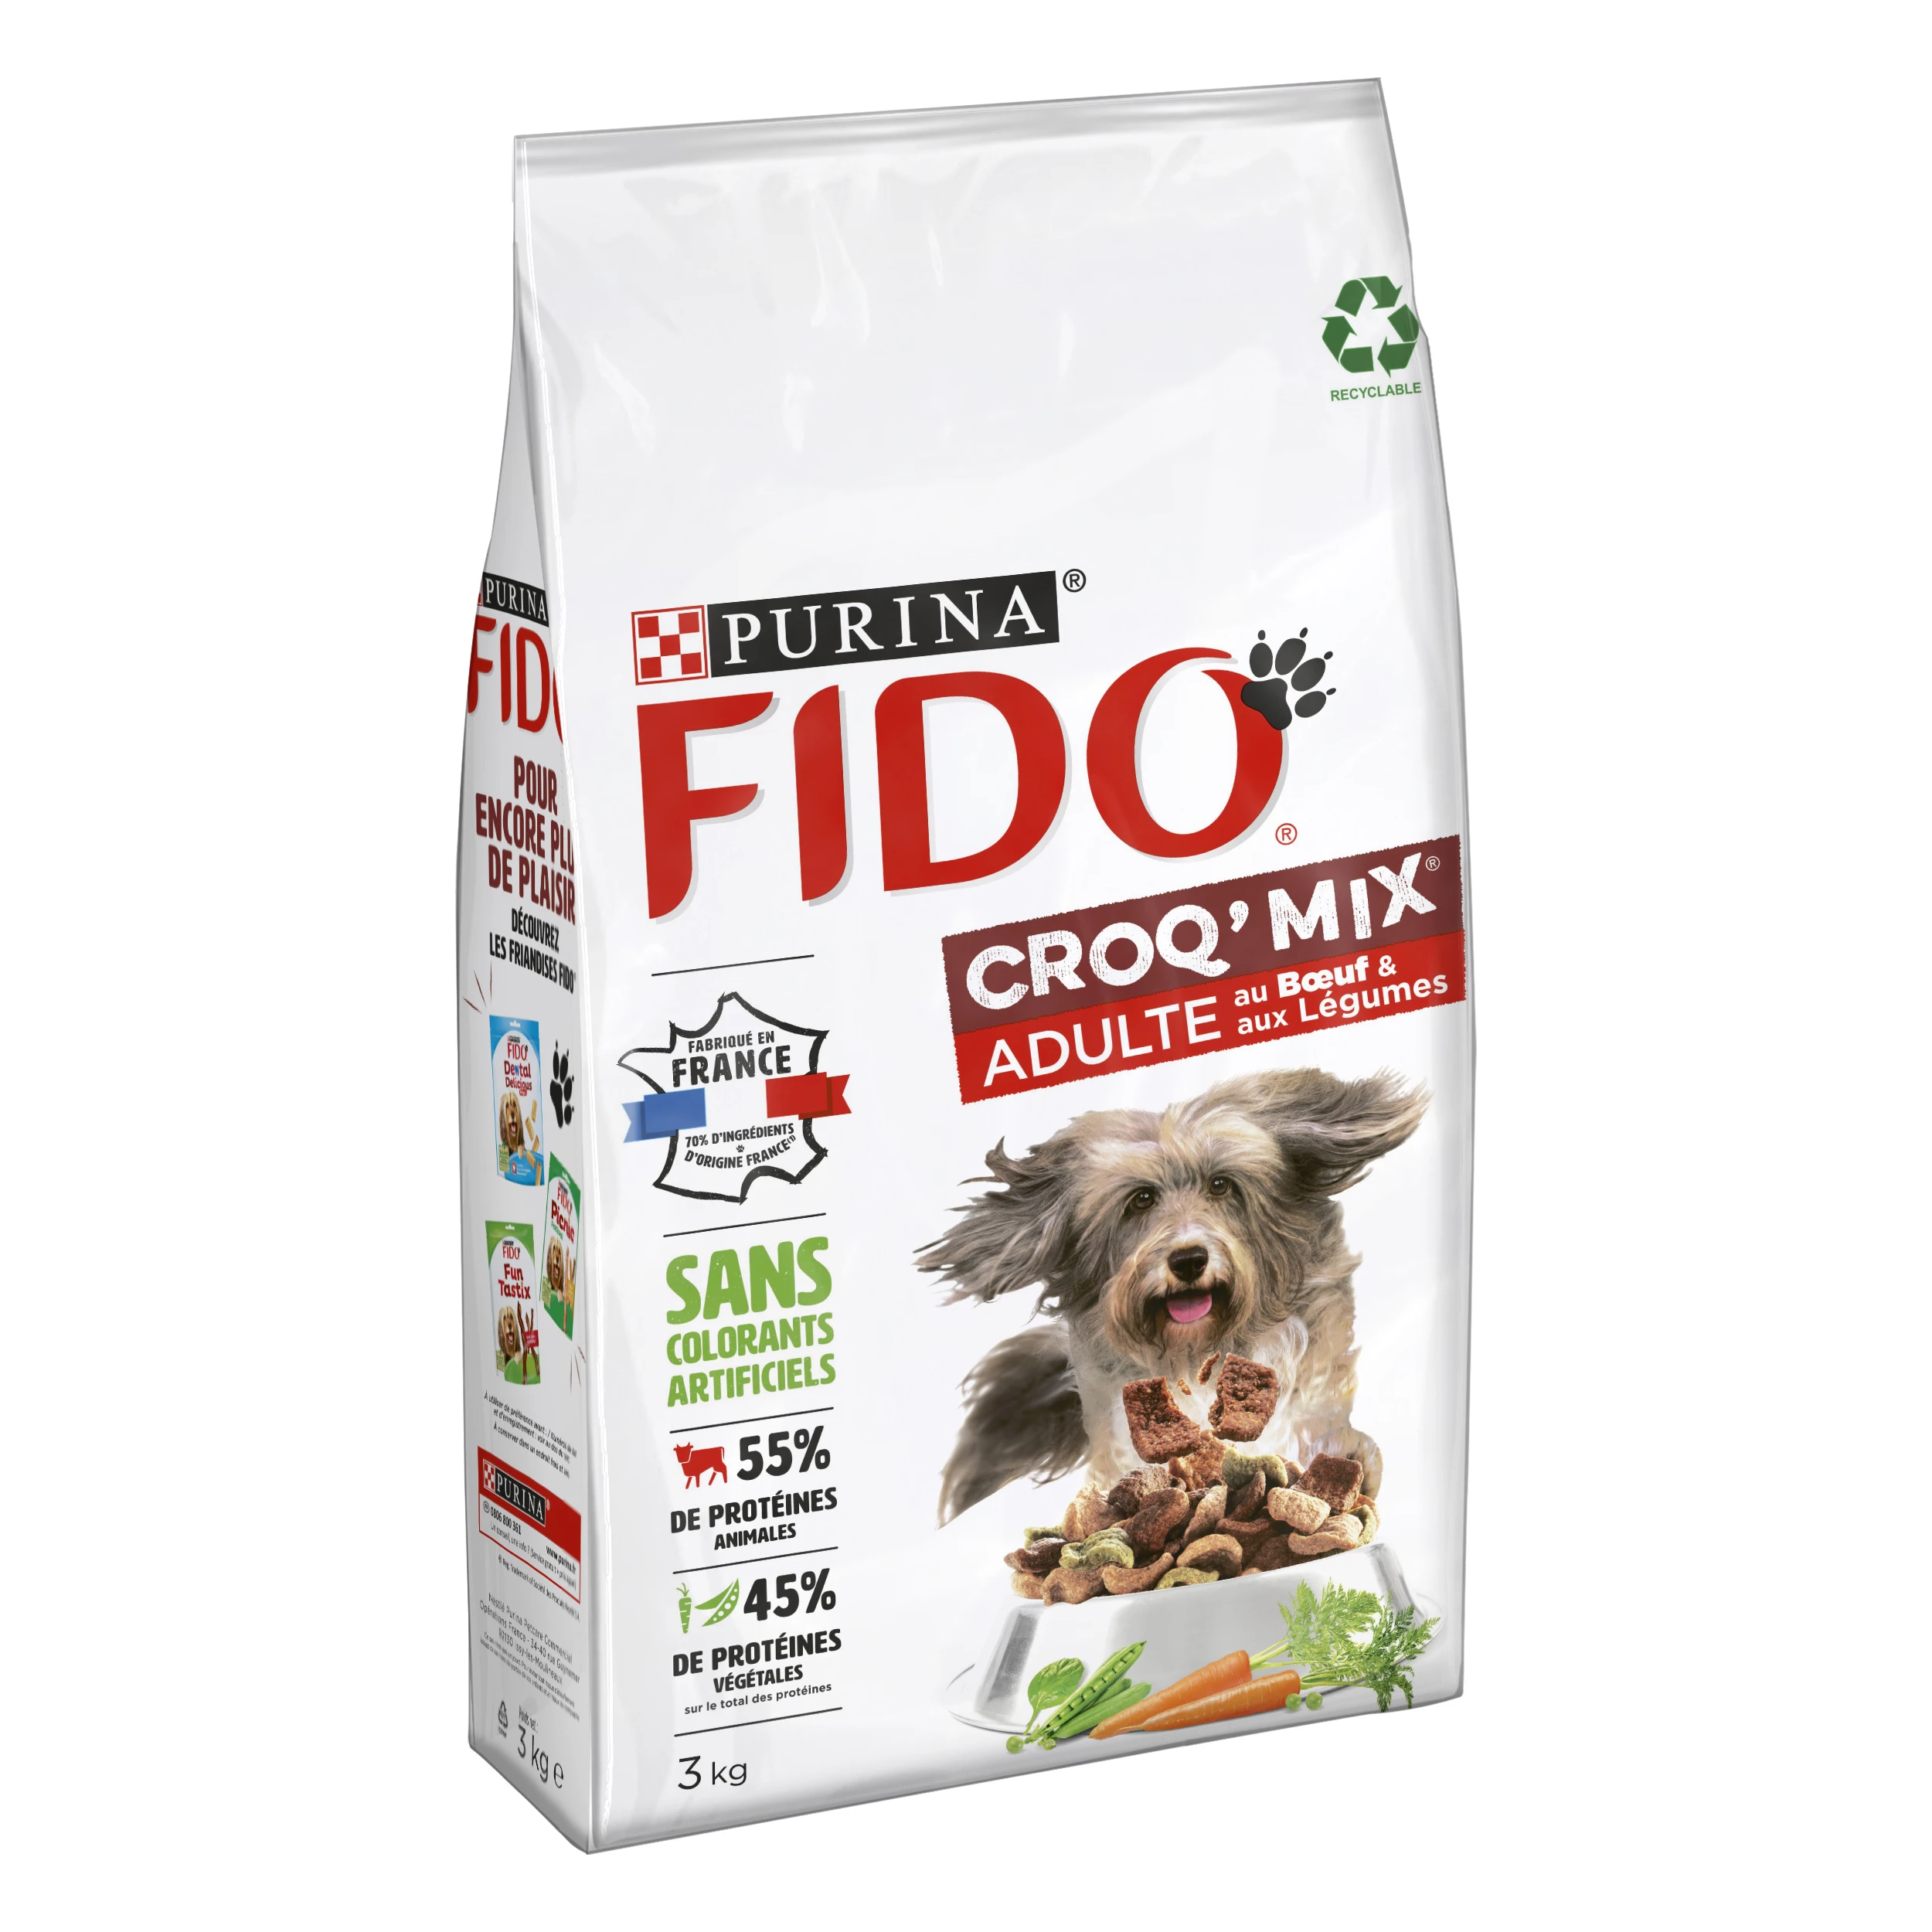 Croq' mix crocchette per cani adulti con manzo e verdure 3kg - PURINA FIDO